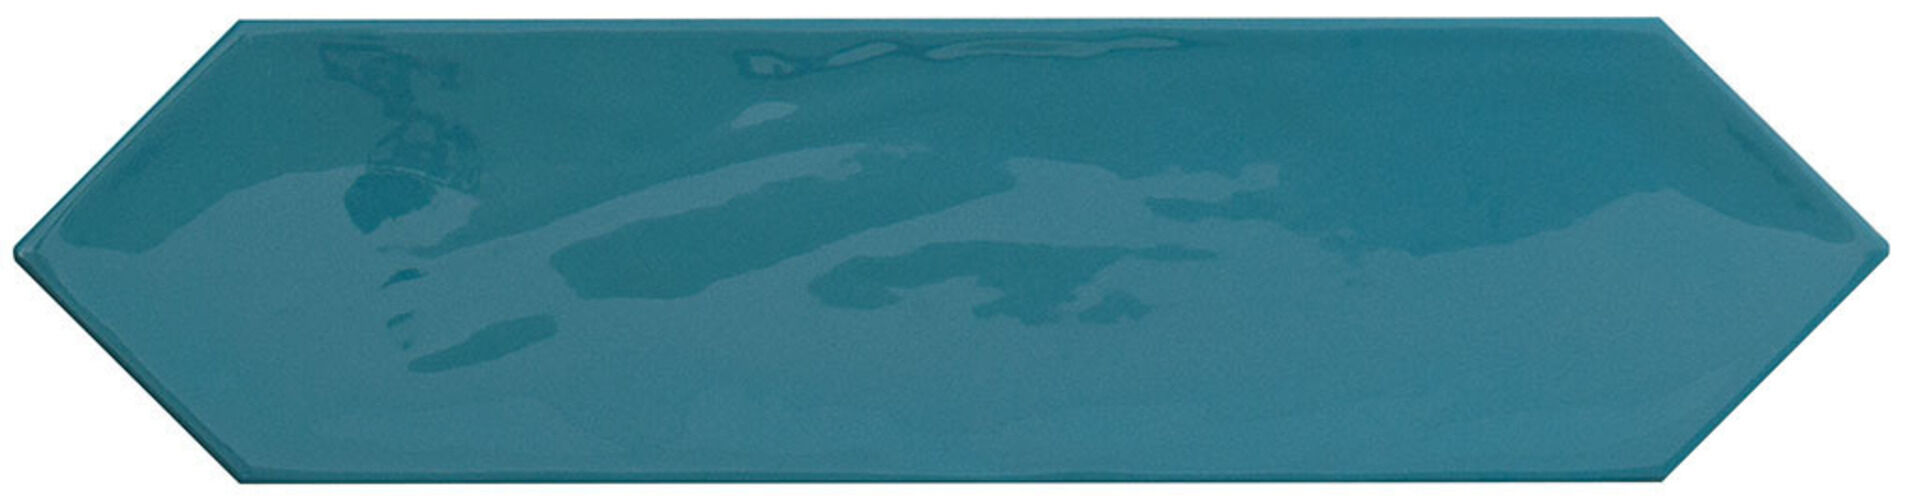 Керамическая плитка KANE PICKET MARINE 7,5*30 / коллекция KANE / производитель CIFRE CERAMICA / страна Испания